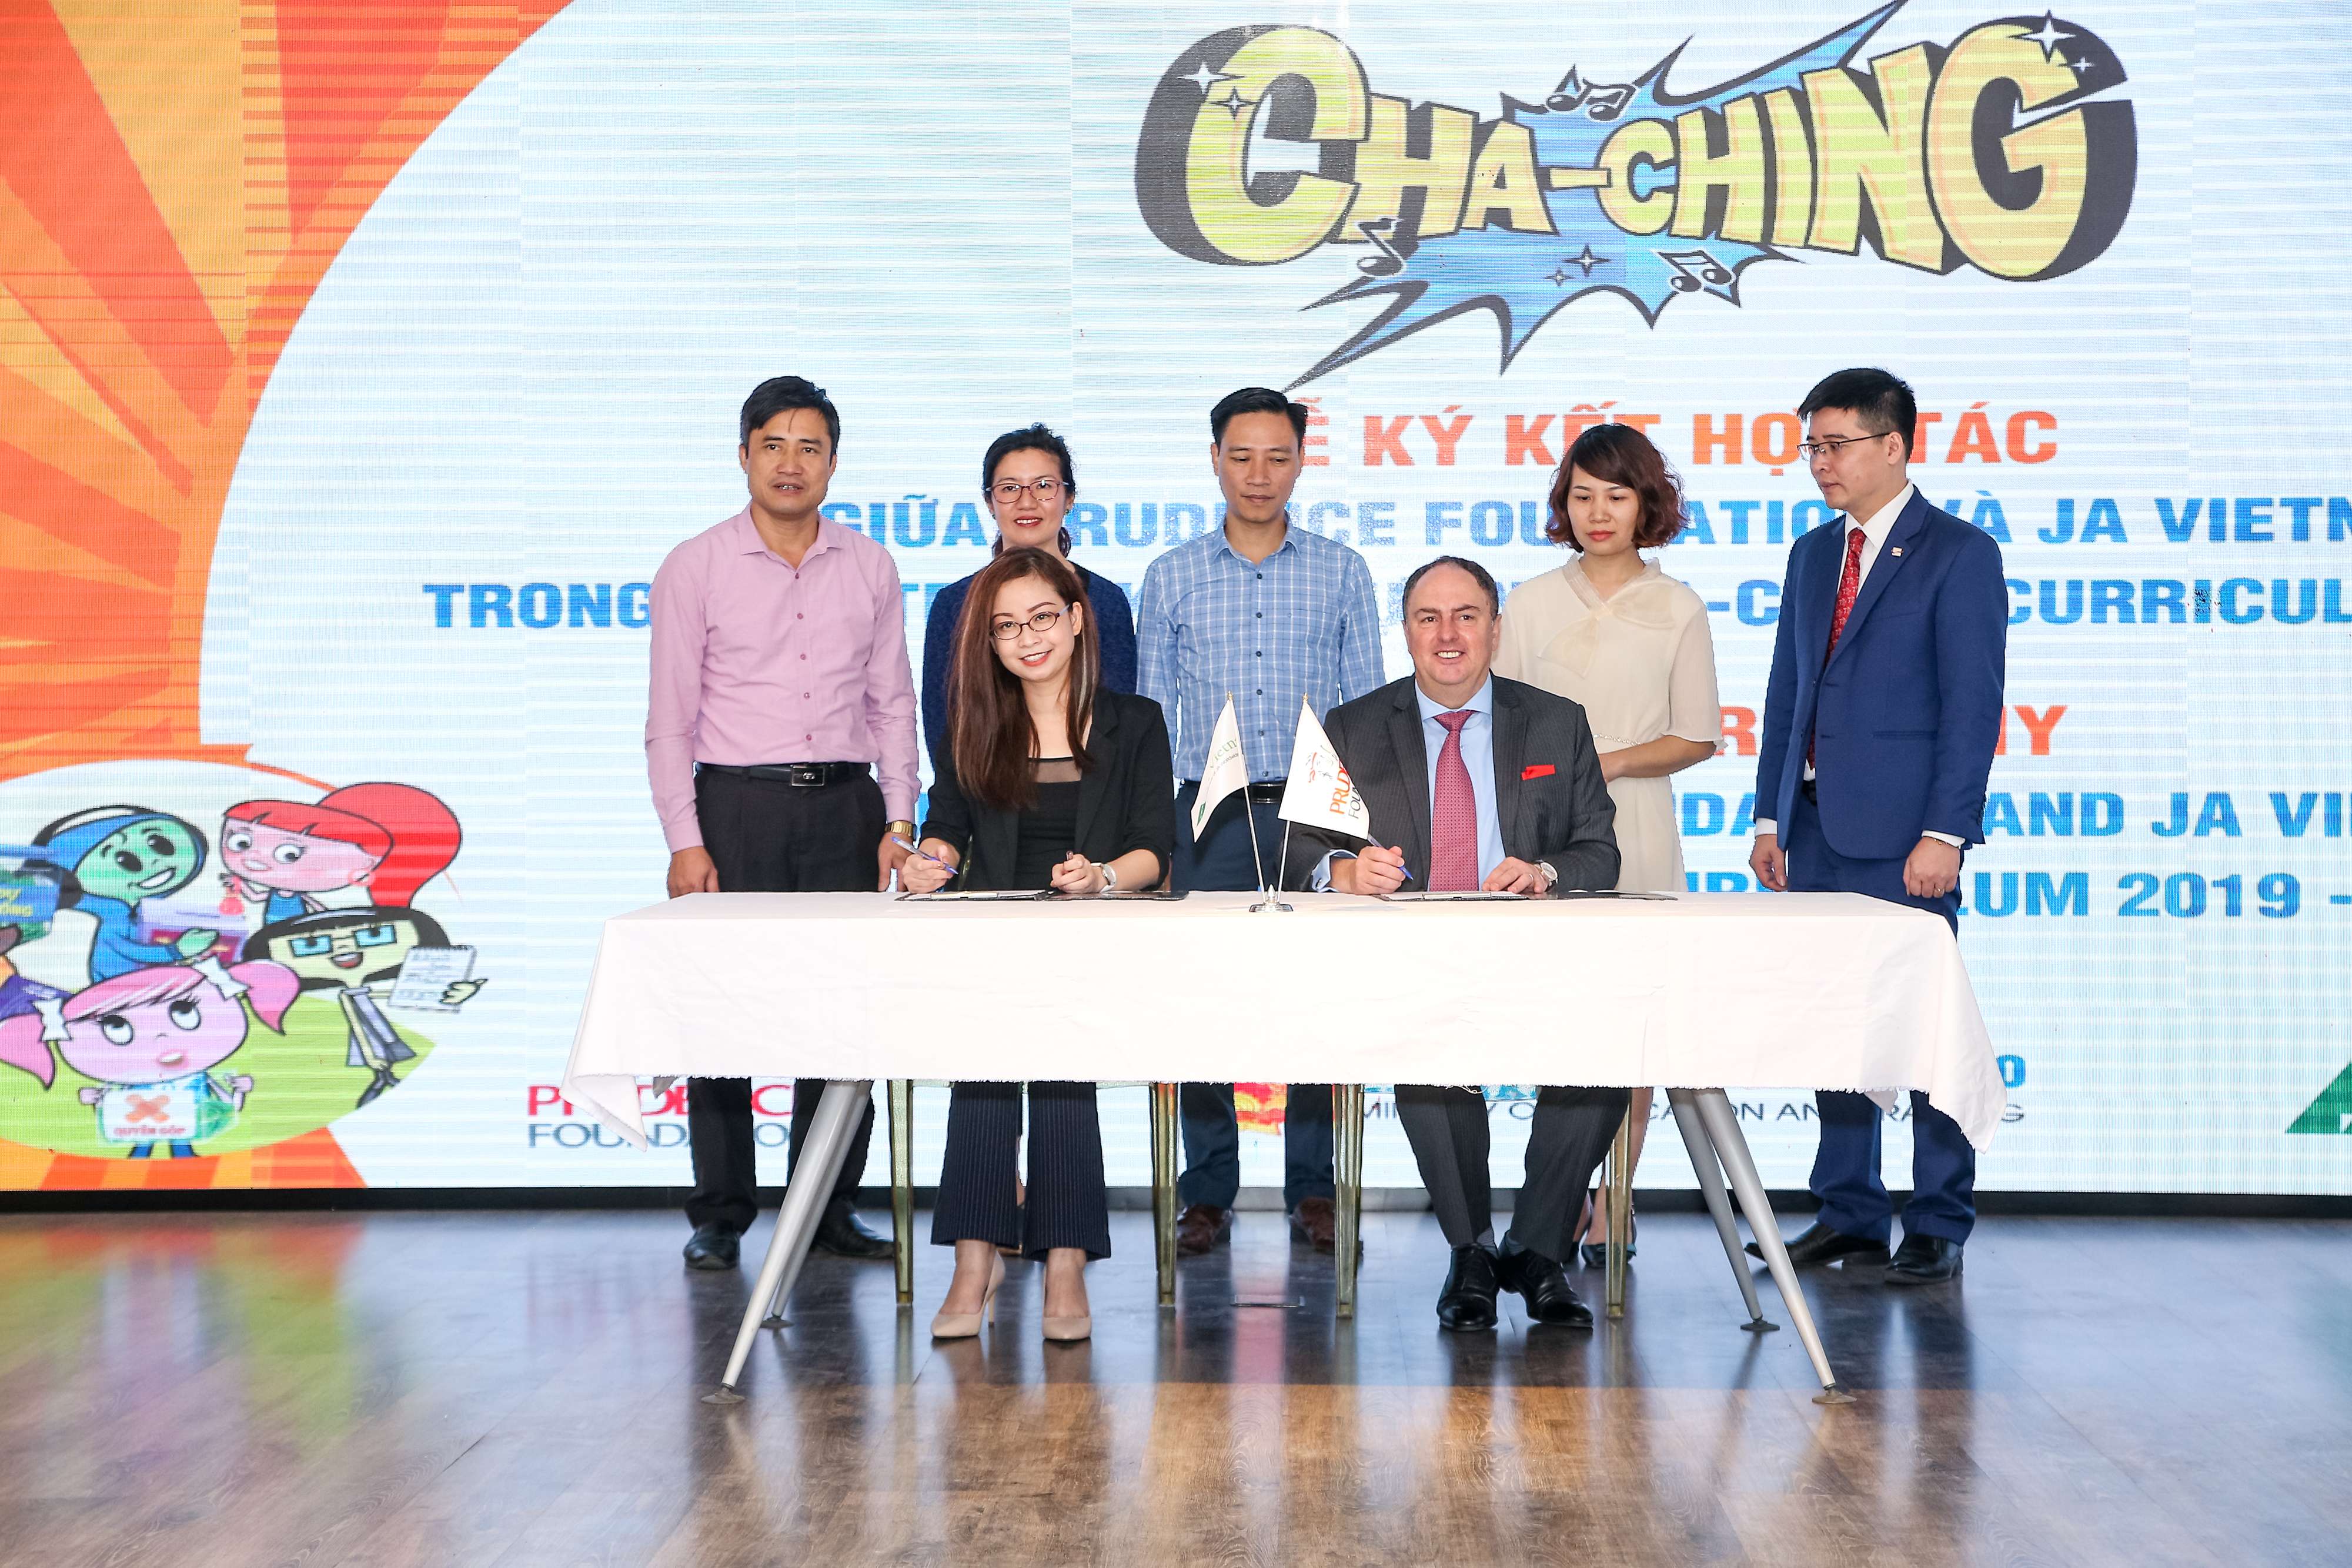 Quỹ Prudence và JA Việt Nam hợp tác triển khai Giáo trình quản lý tài chính Cha-Ching 1